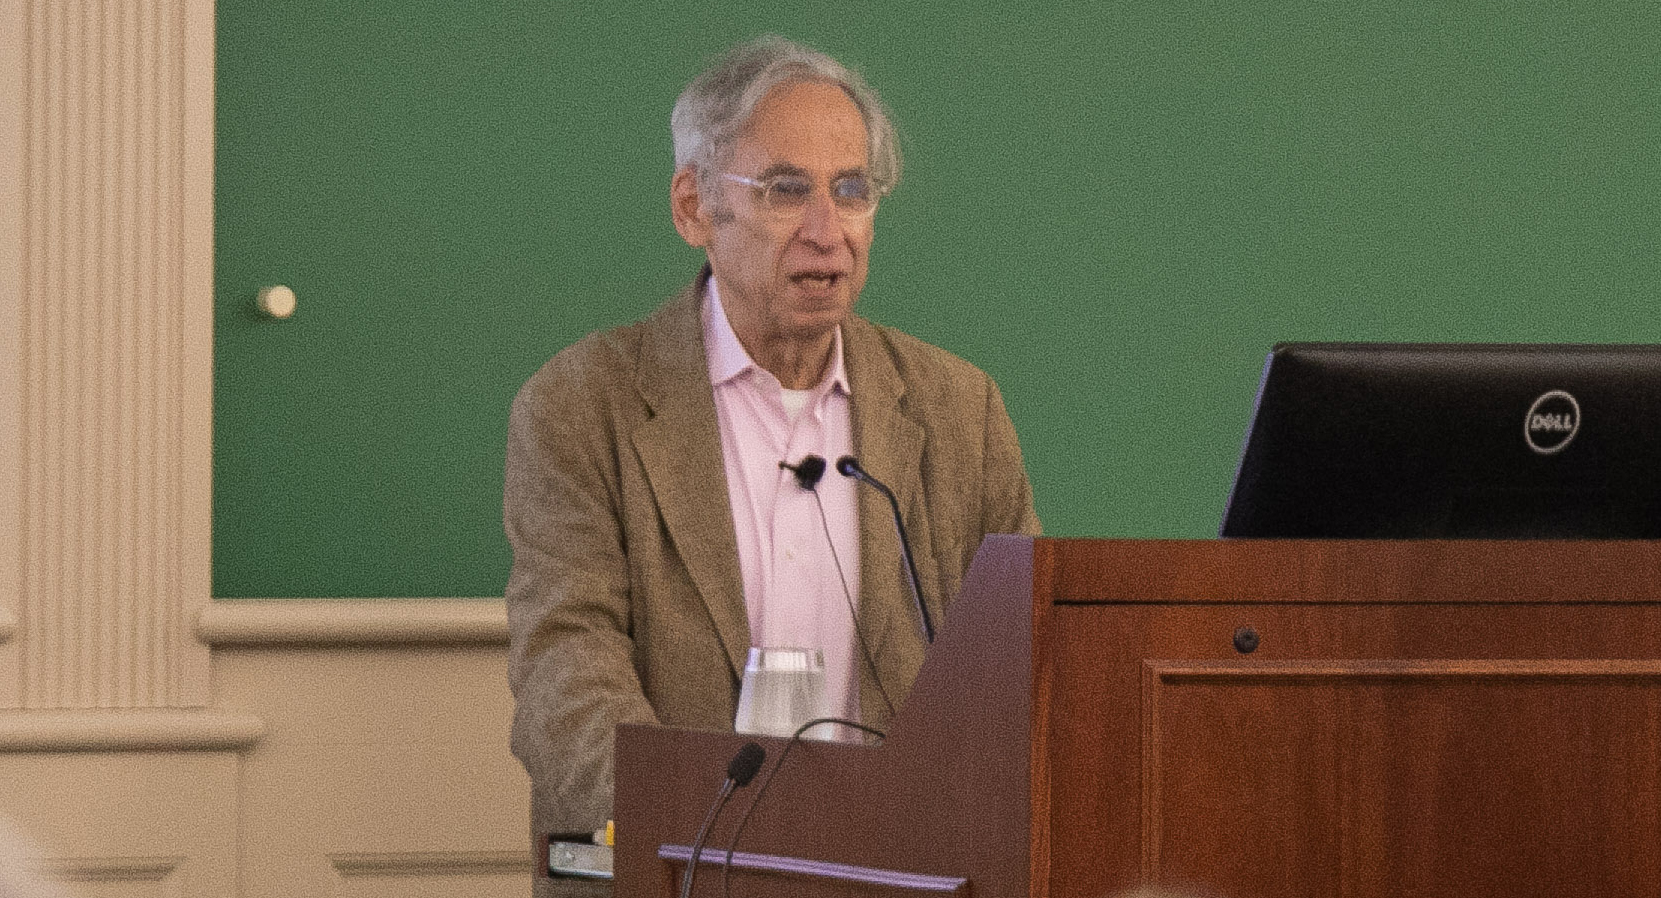 Professor Stephen Gillers teaching a class during reunion weekend 2019